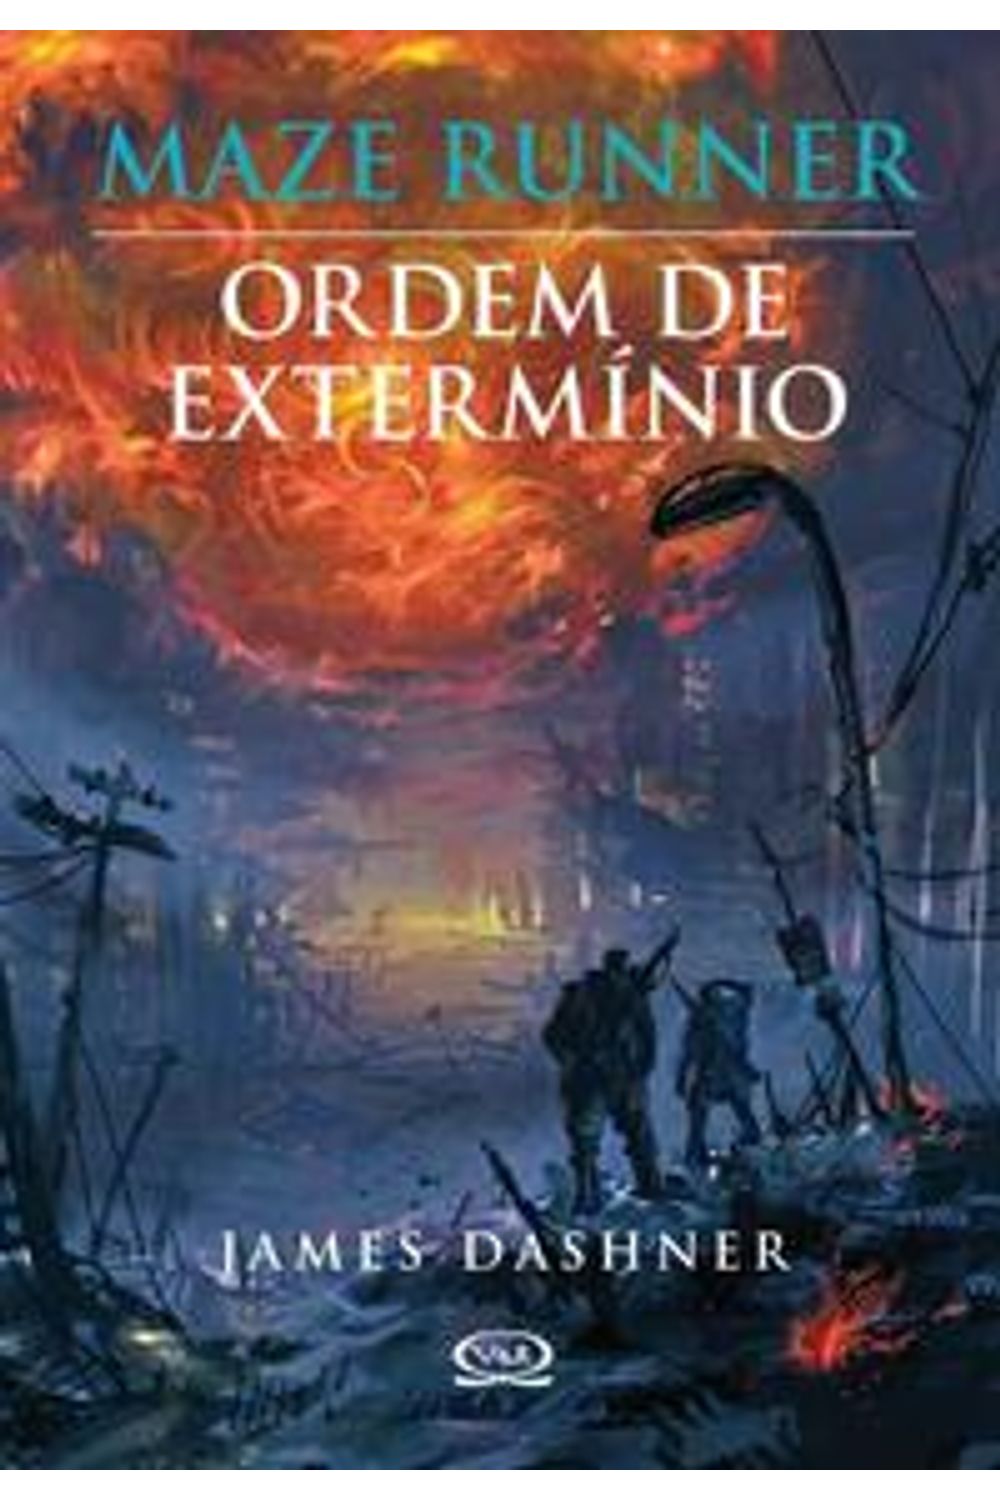  Por Dentro de Maze Runner. O Guia da Clareira (Em Portuguese do  Brasil): 9788576837527: James Dashner, Veronica Deets: Libros